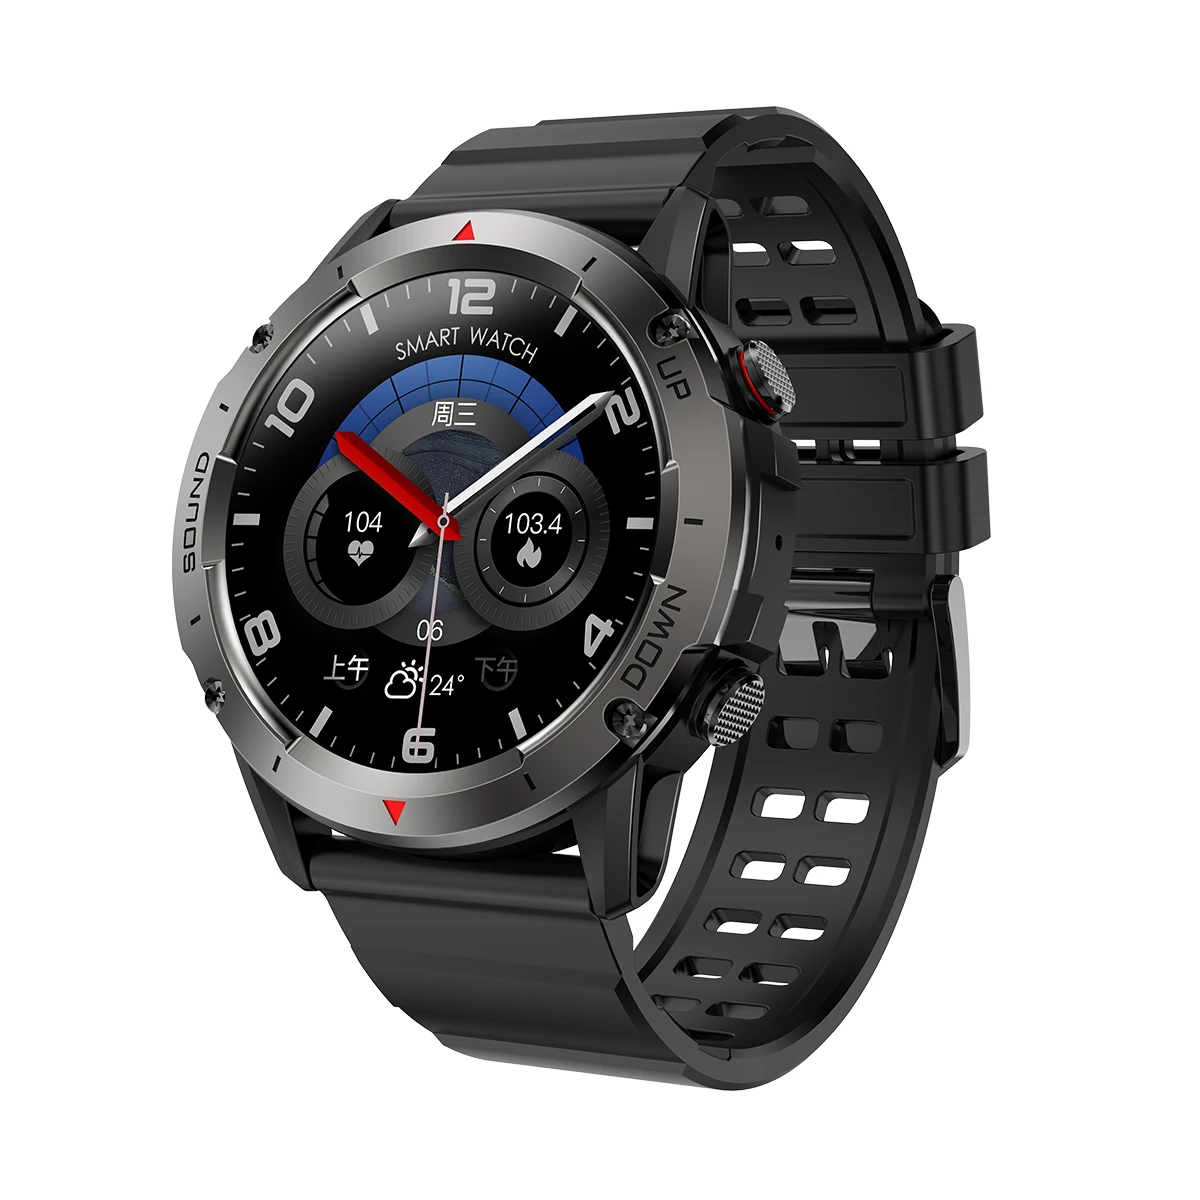 

Смарт-часы NX9 мужские с Bluetooth, пульсометром и датчиком уровня кислорода в крови